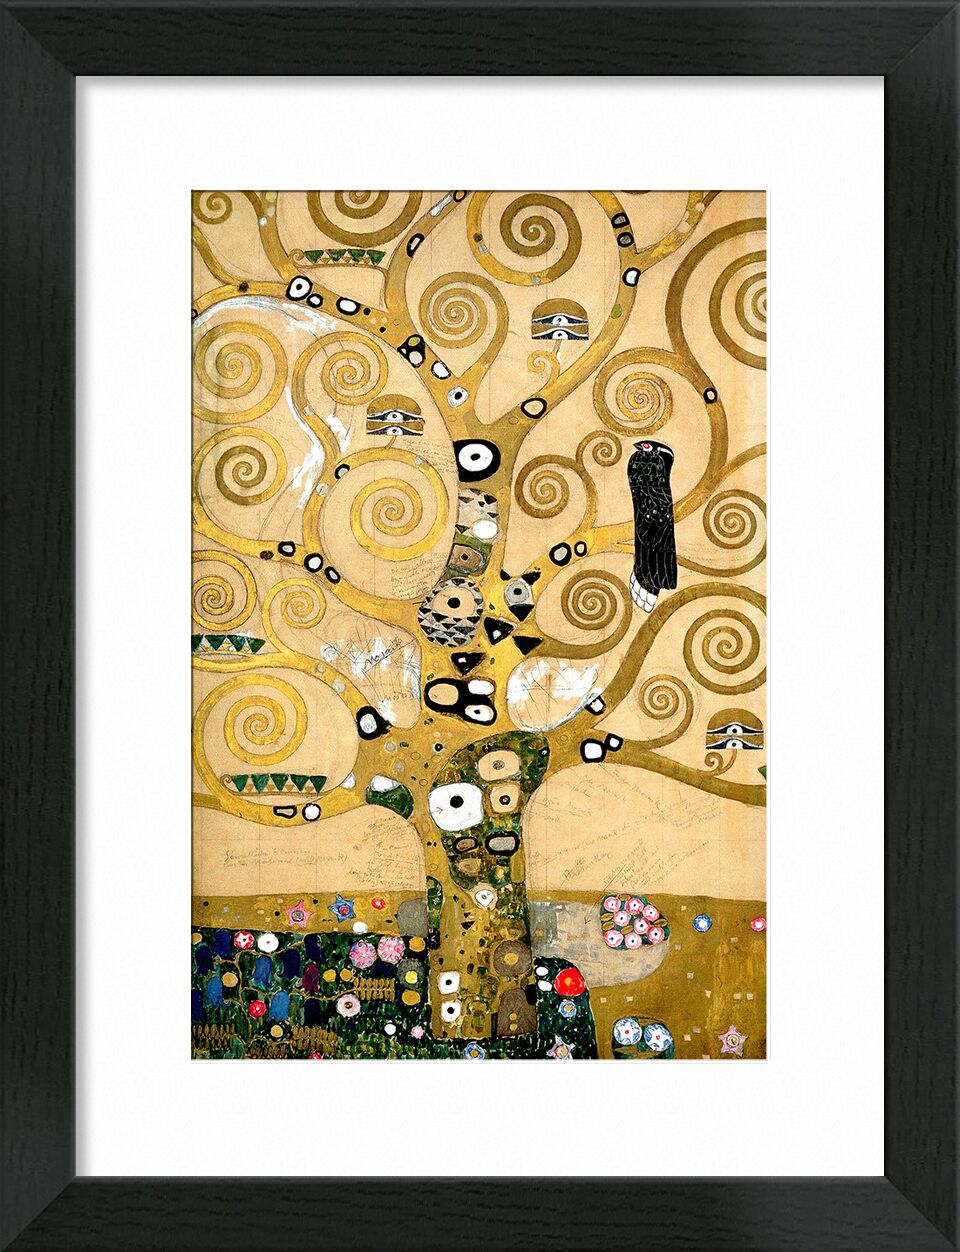 The tree of Life, The Arborvitae - Gustav Klimt desde Bellas artes, Prodi Art, árbol, pintura, art nouveau, arbol de la vida